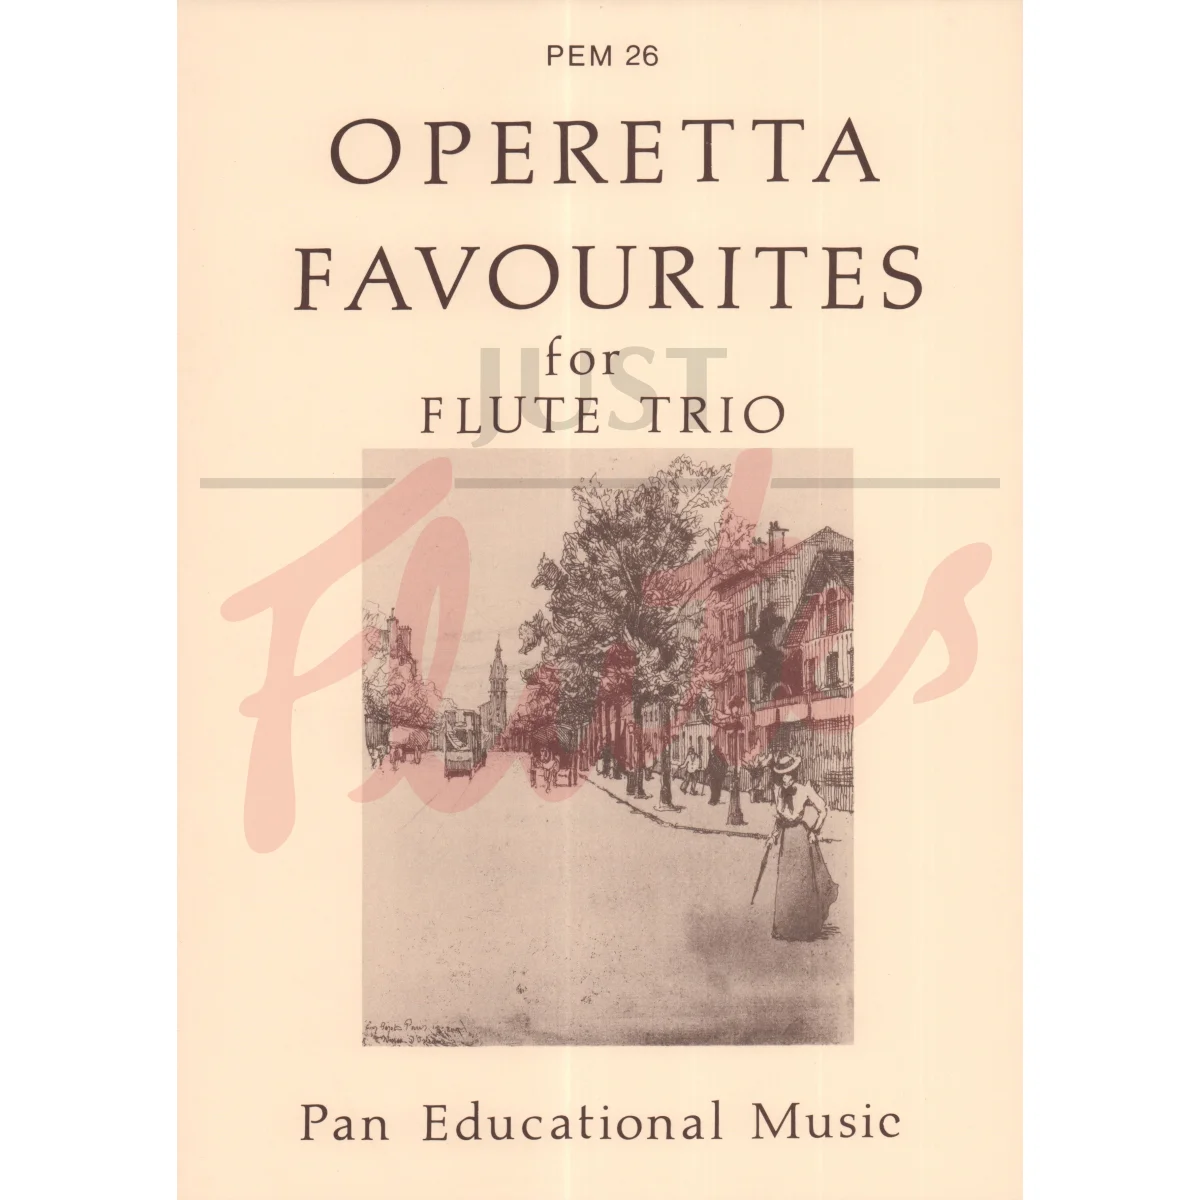 Operetta Favourites for Flute Trio